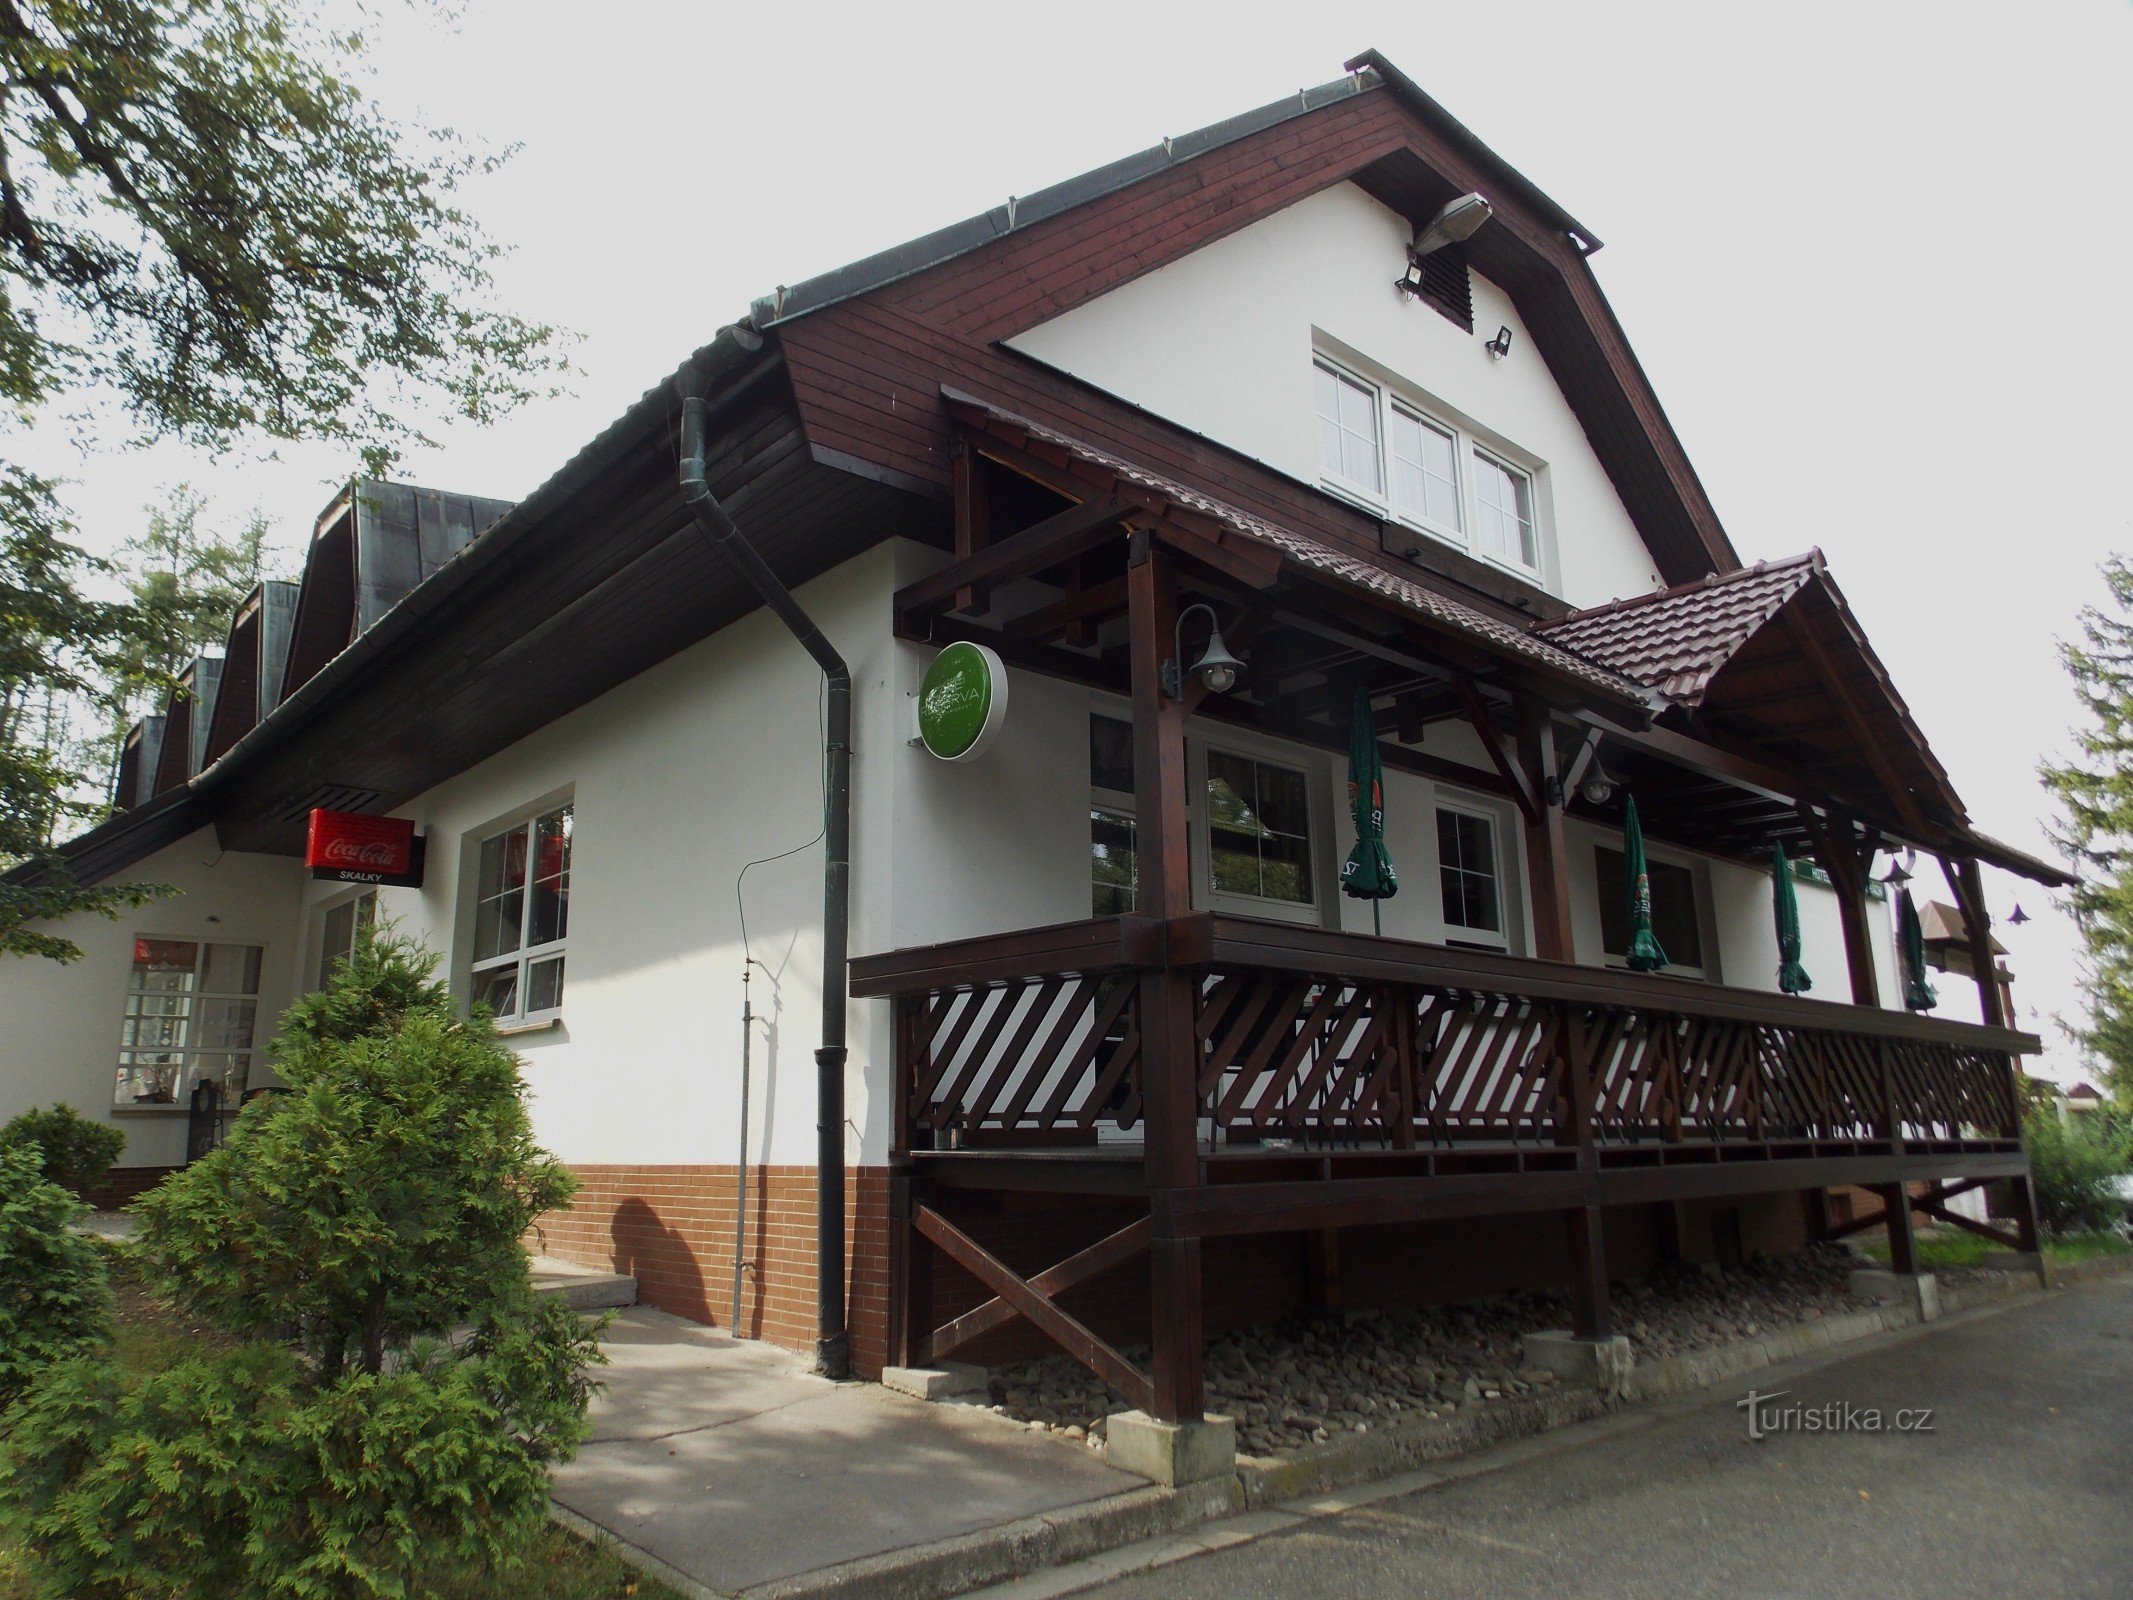 Un hotel cu restaurant în zona de recreere din Skalka, lângă Nové Jičín